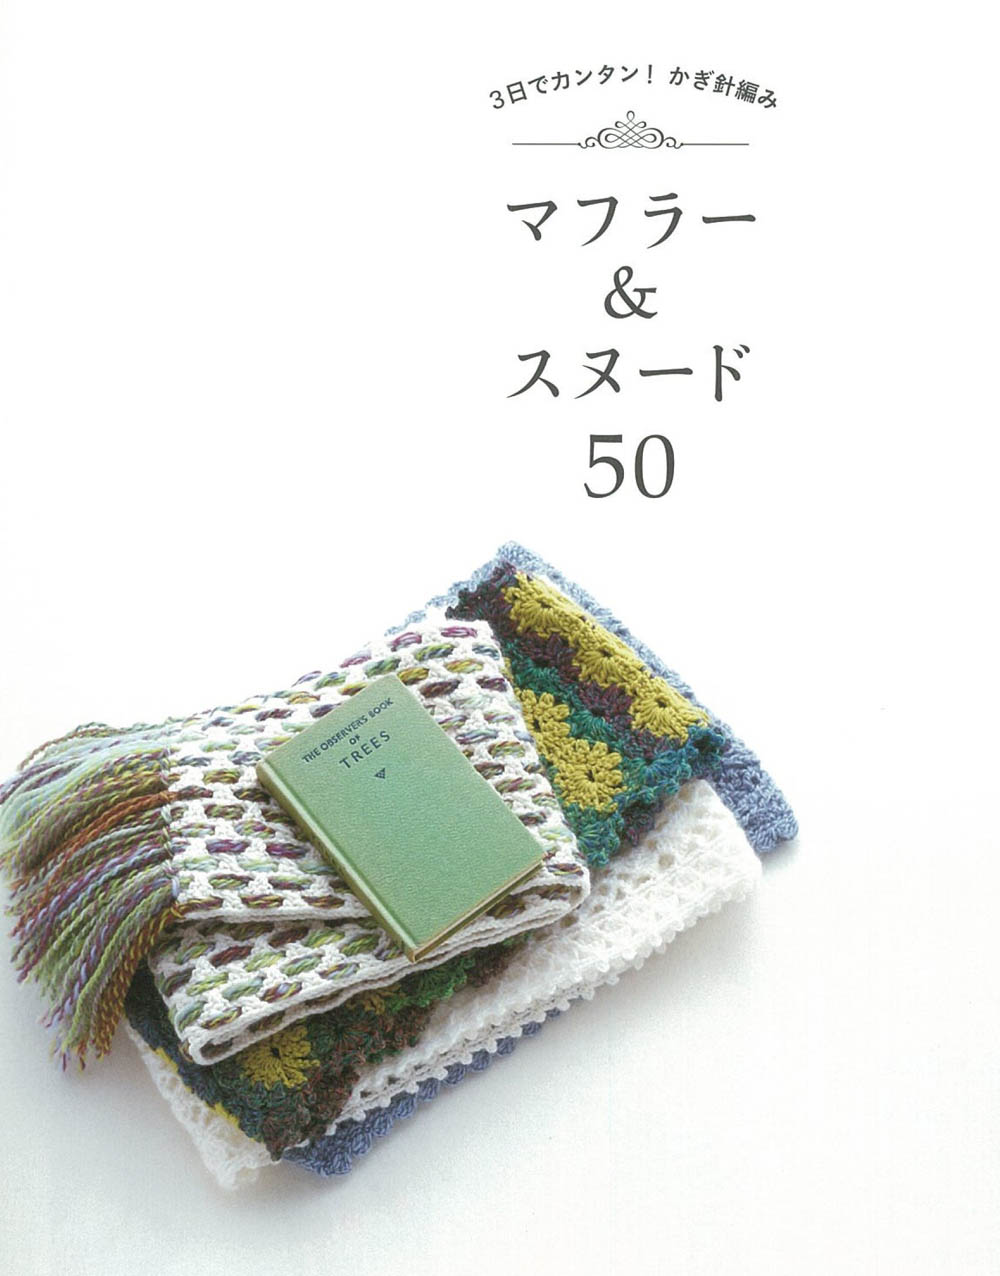 Muffler & Snood 50 crochet